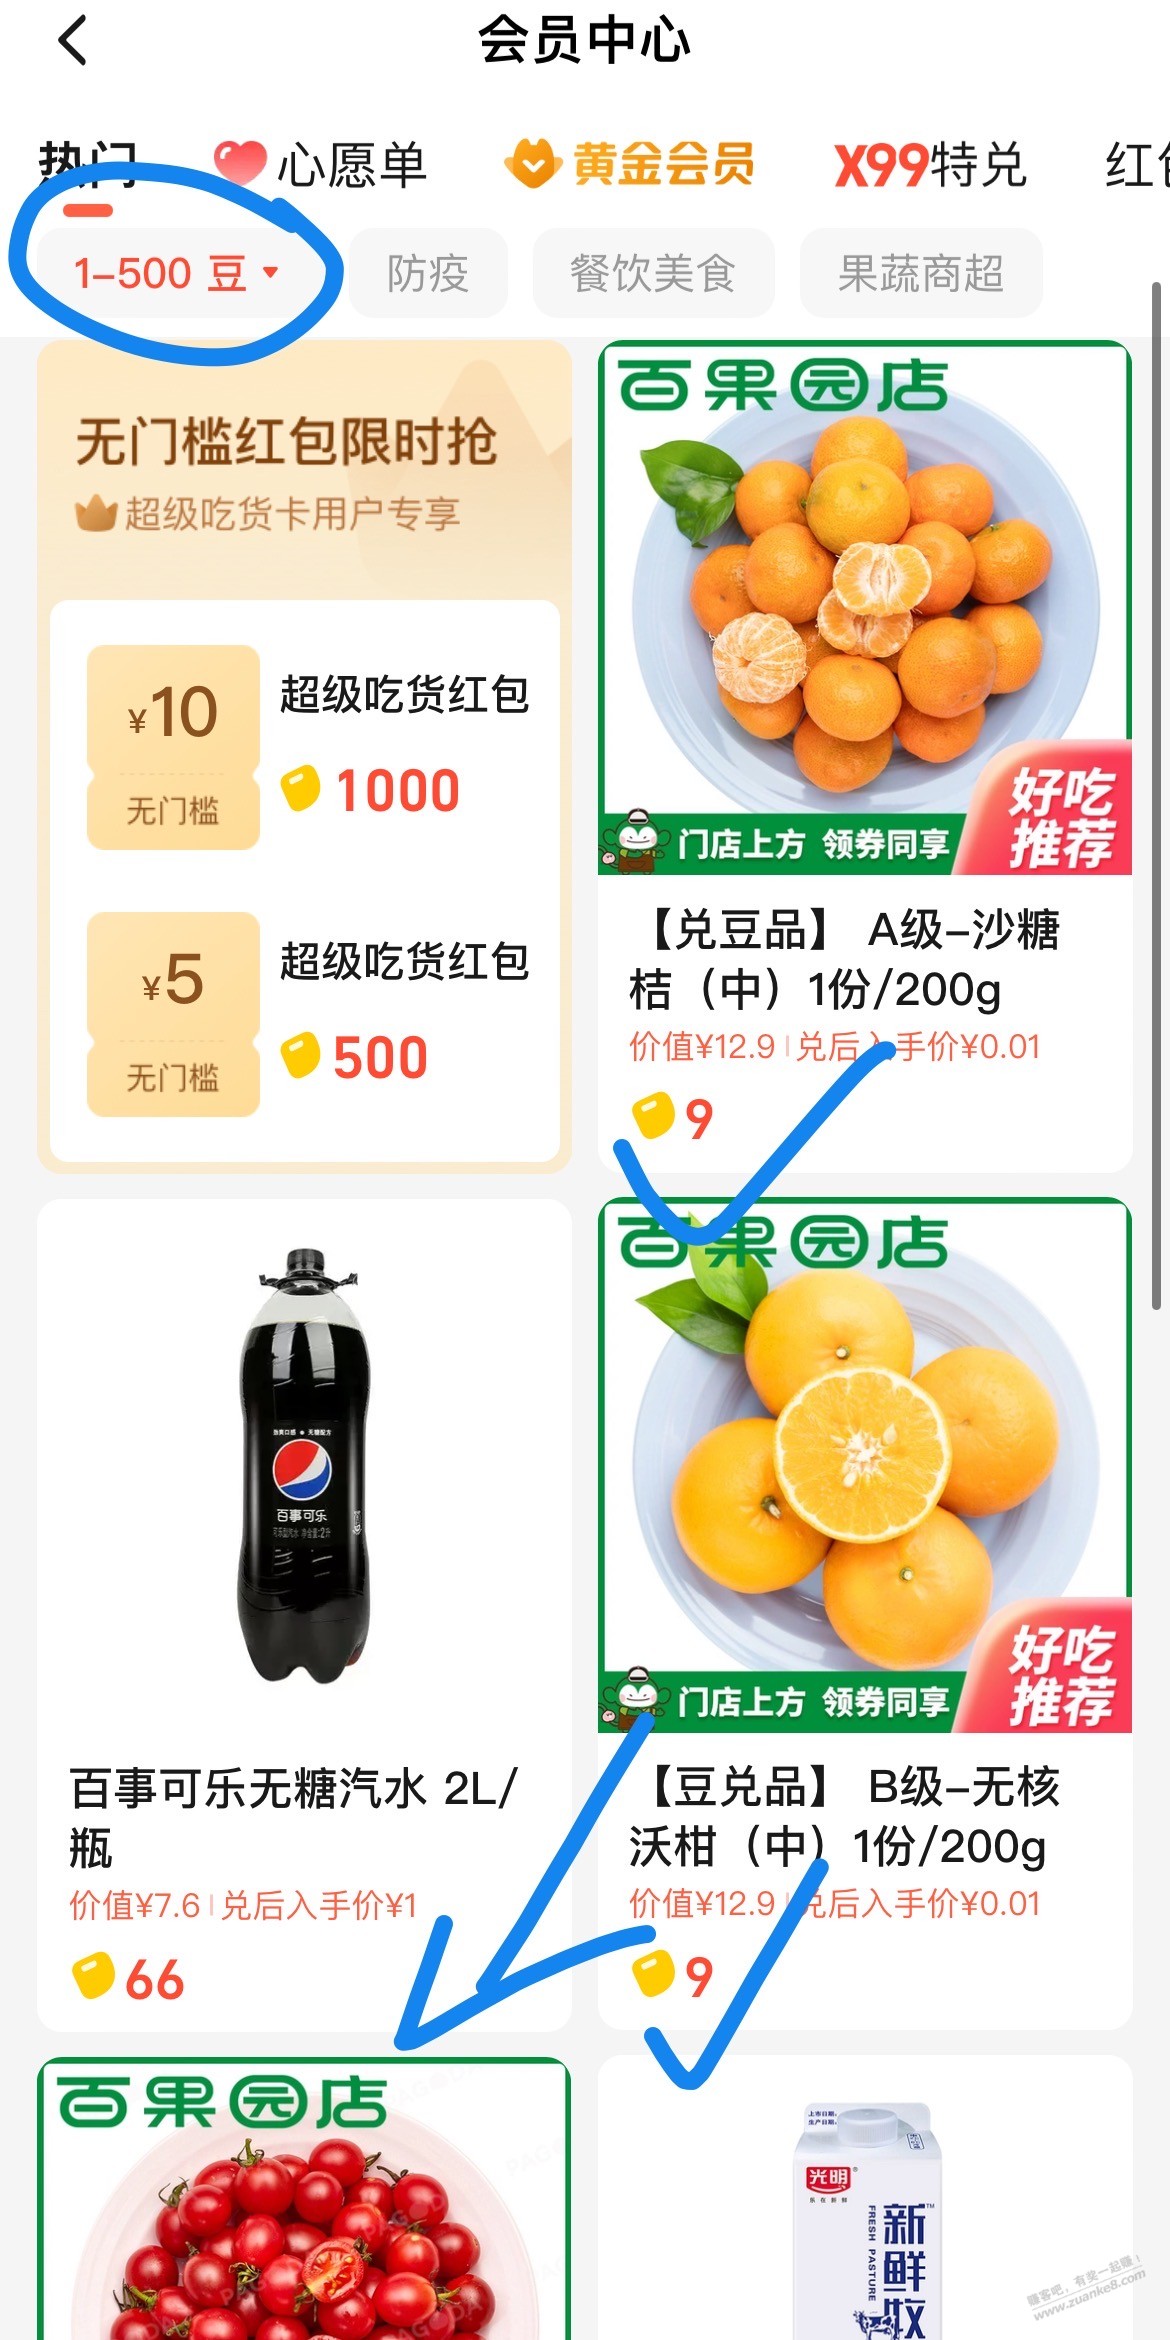 好价水果-送货上门-惠小助(52huixz.com)